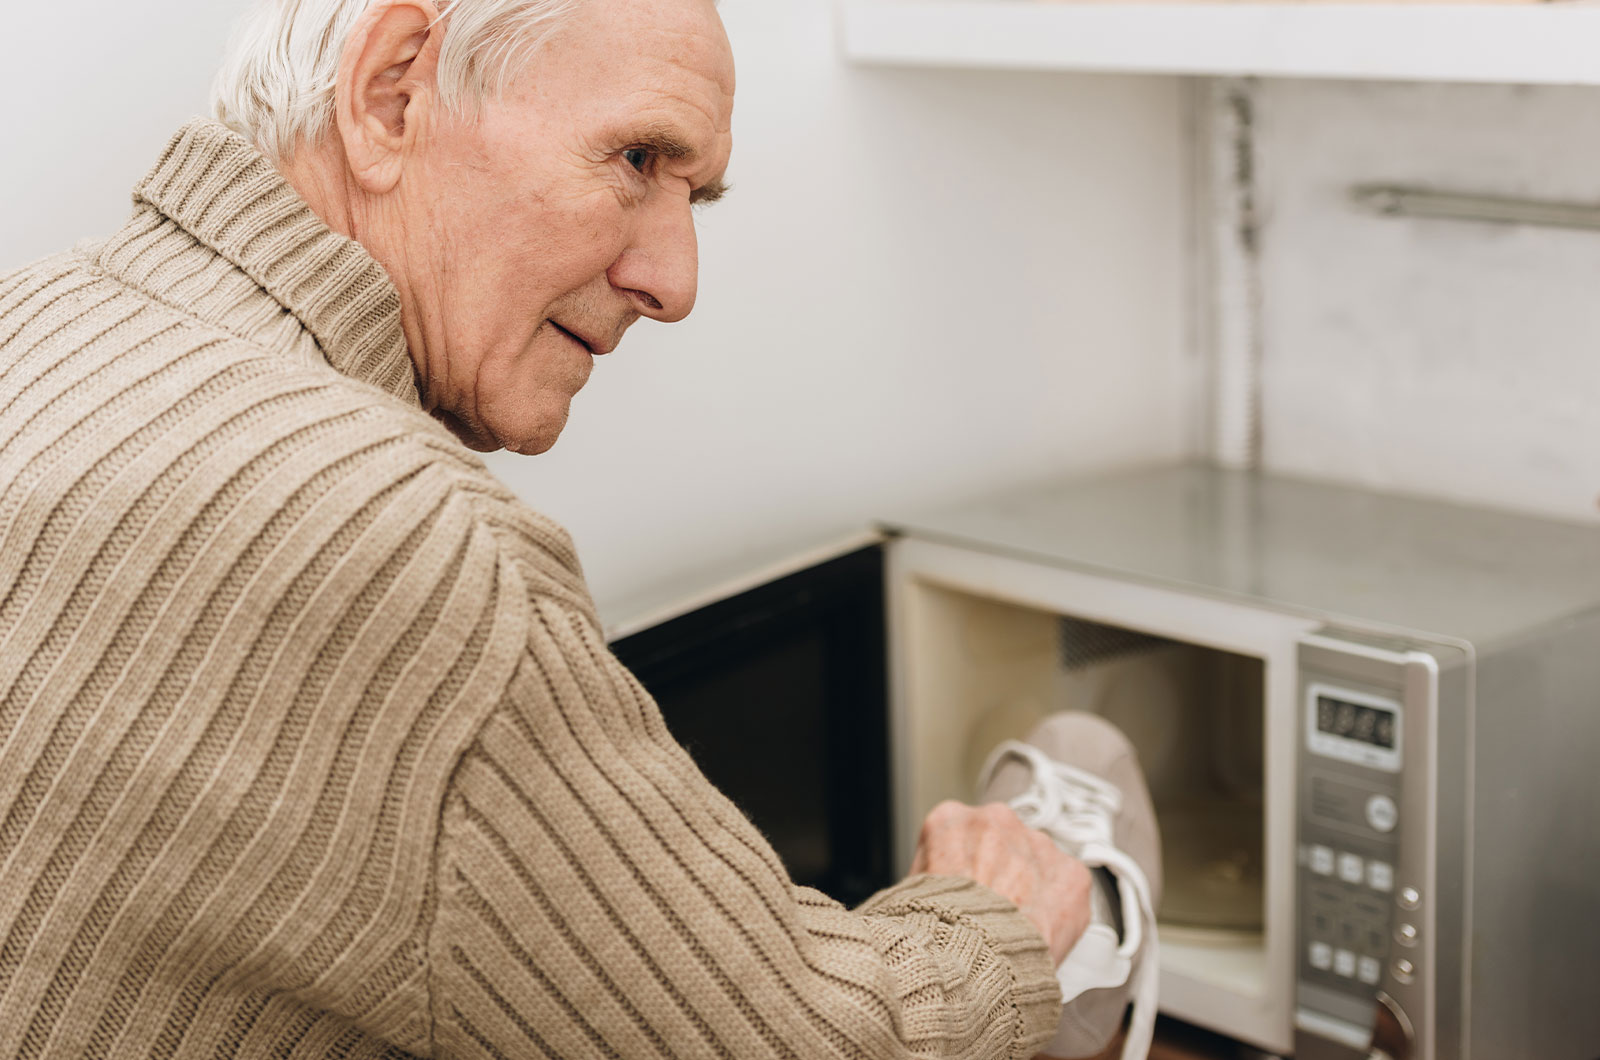 älterer Mann mit Demenzerkrankung steckt Schuh in Mikrowelle